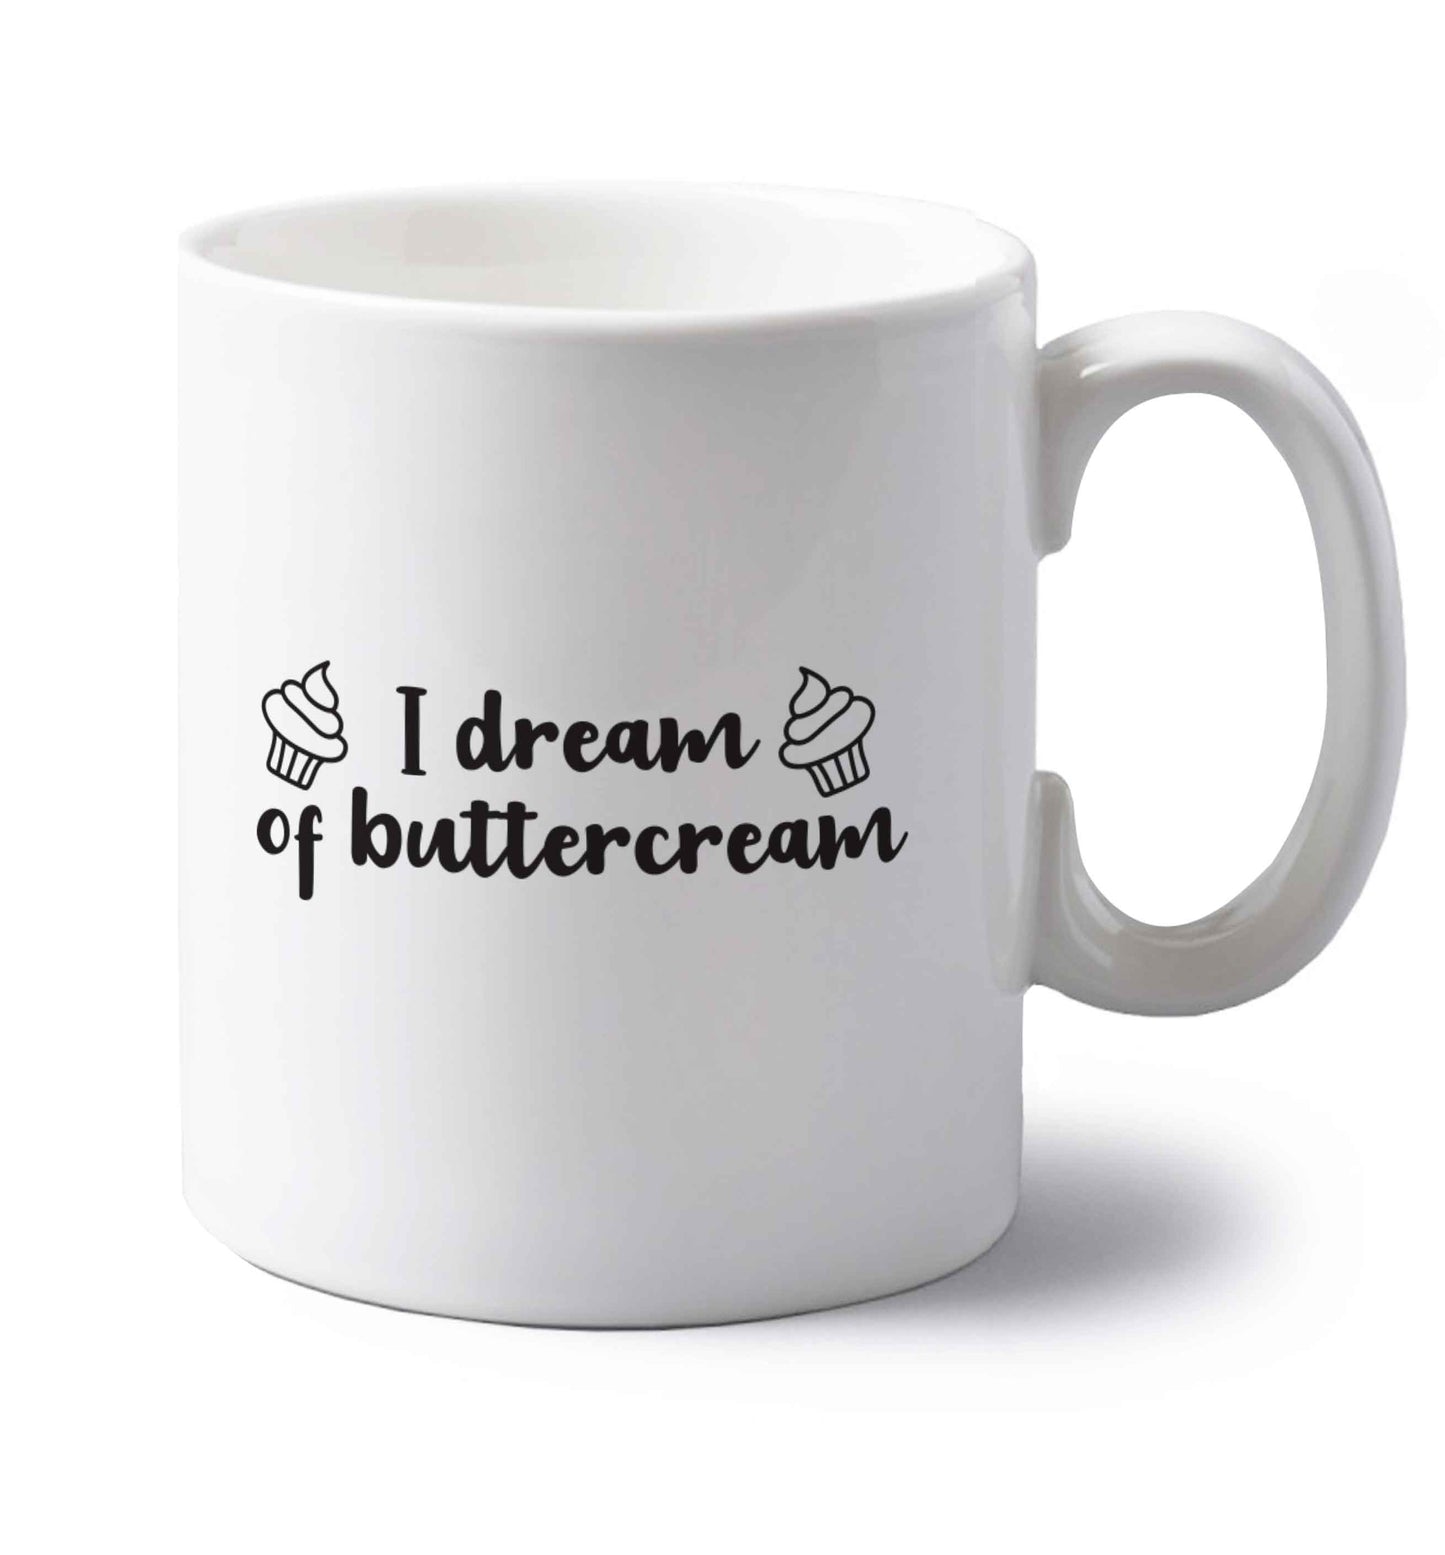 I dream of buttercream left handed white ceramic mug 